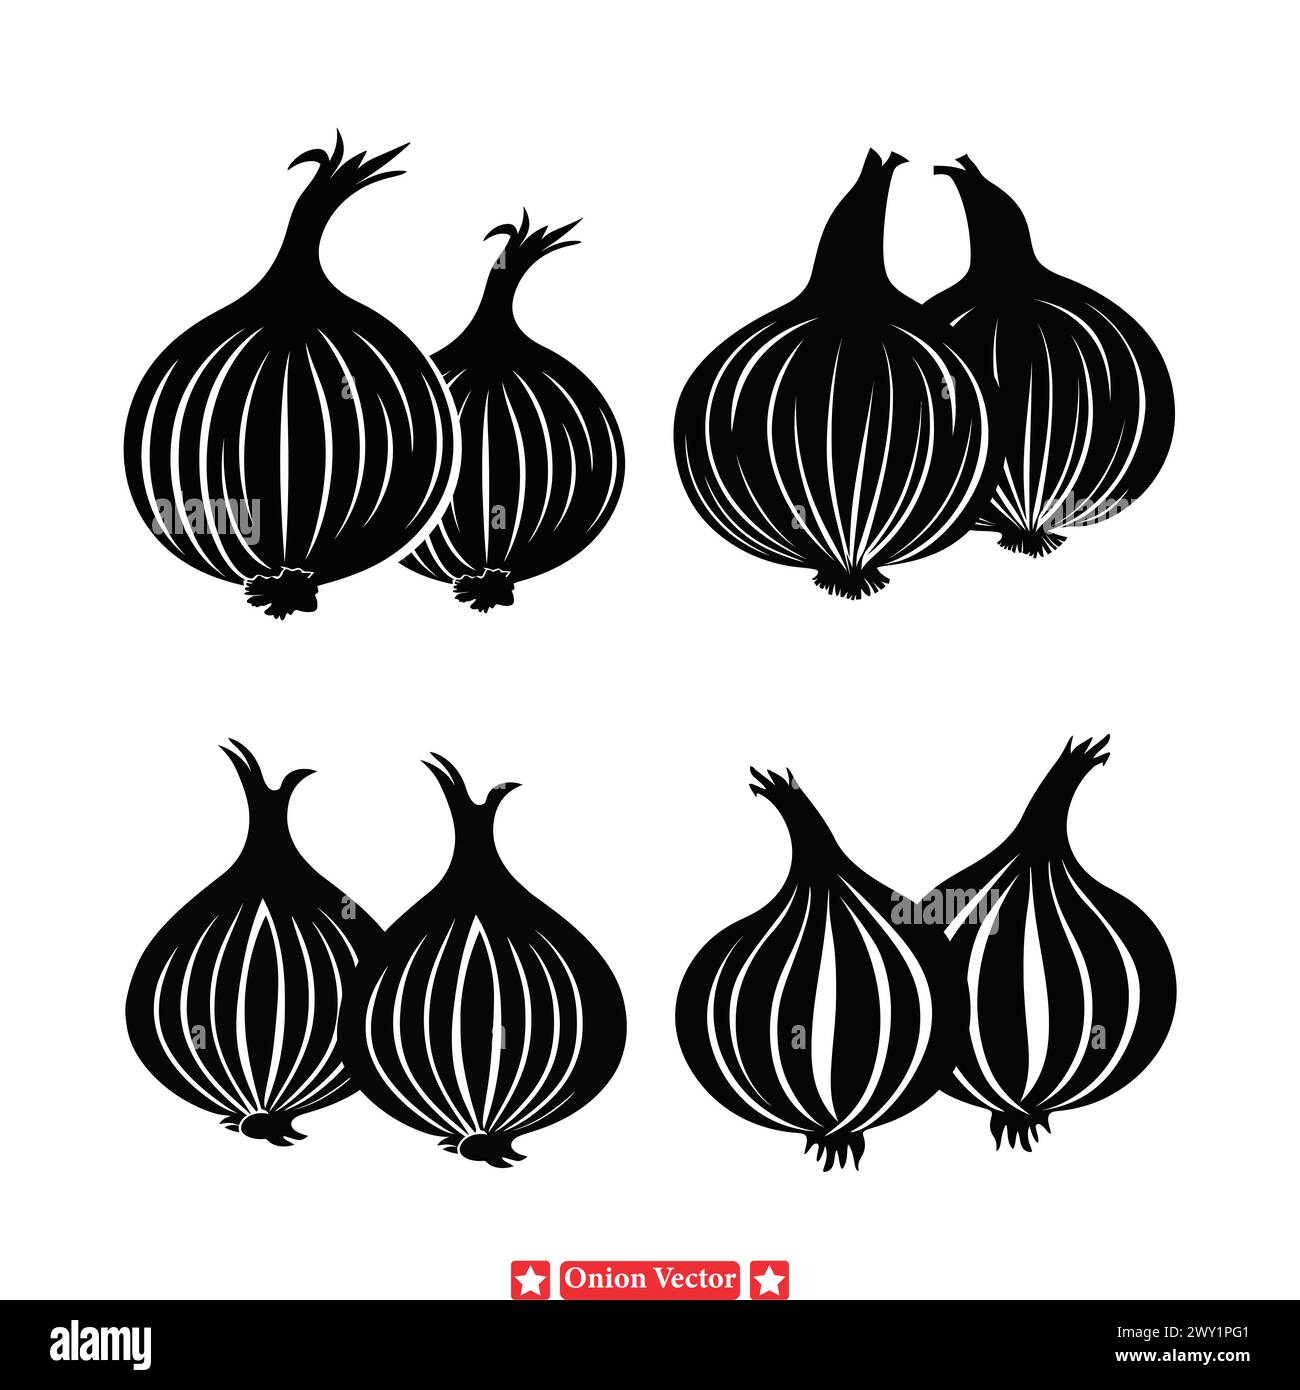 Fresh Onion Vector entwirft scharfe Grafiken für Kochzeitschriften, Lebensmittelverpackungen und kulinarische Veranstaltungen Promotions Stock Vektor